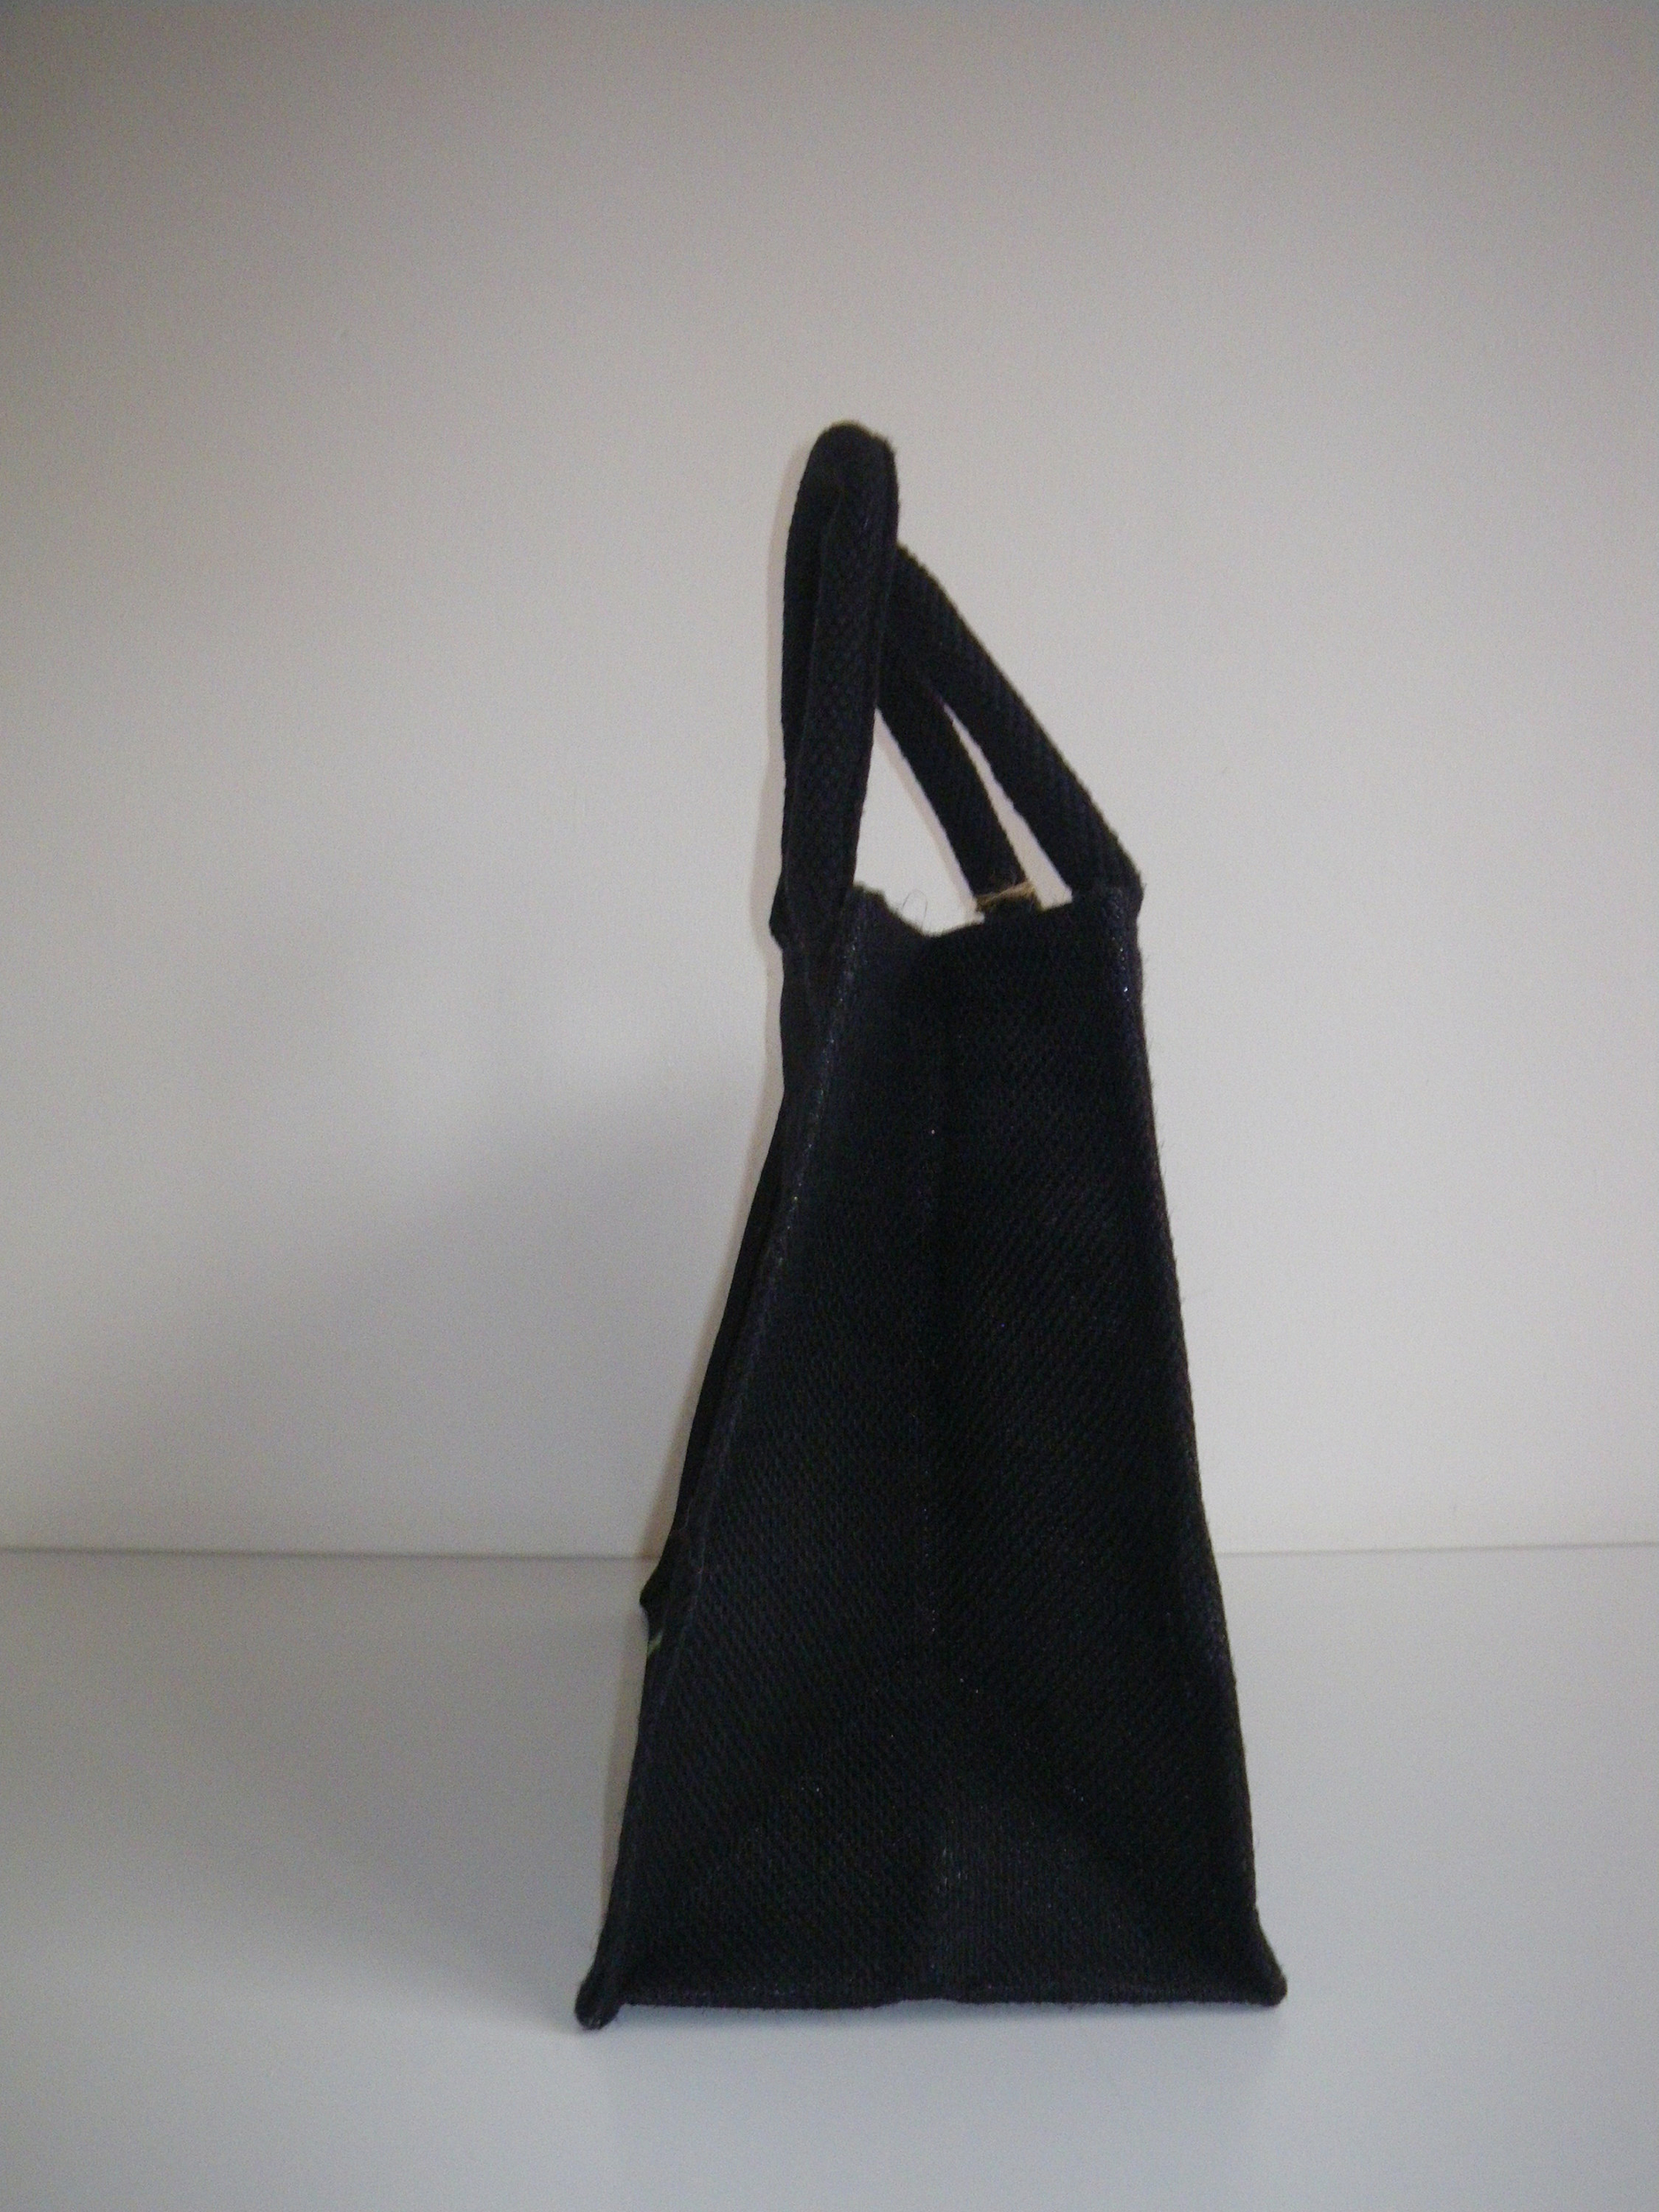 sac jute noire avec fleur de pissenlit